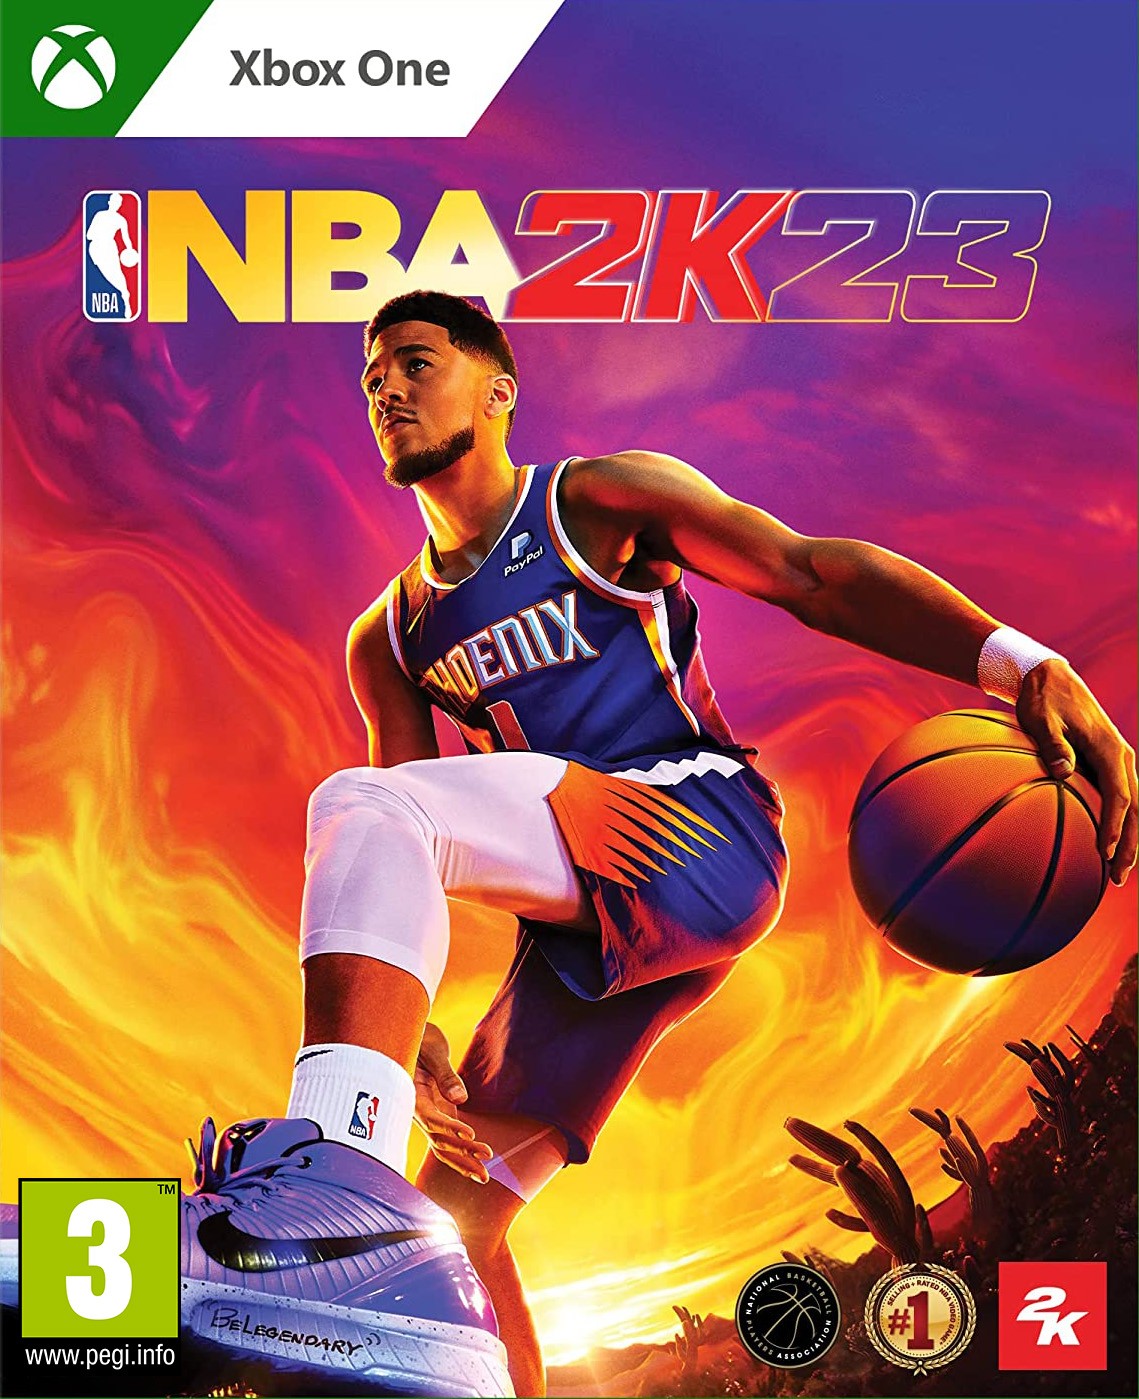 NBA 2K23 + Preorder Bonus